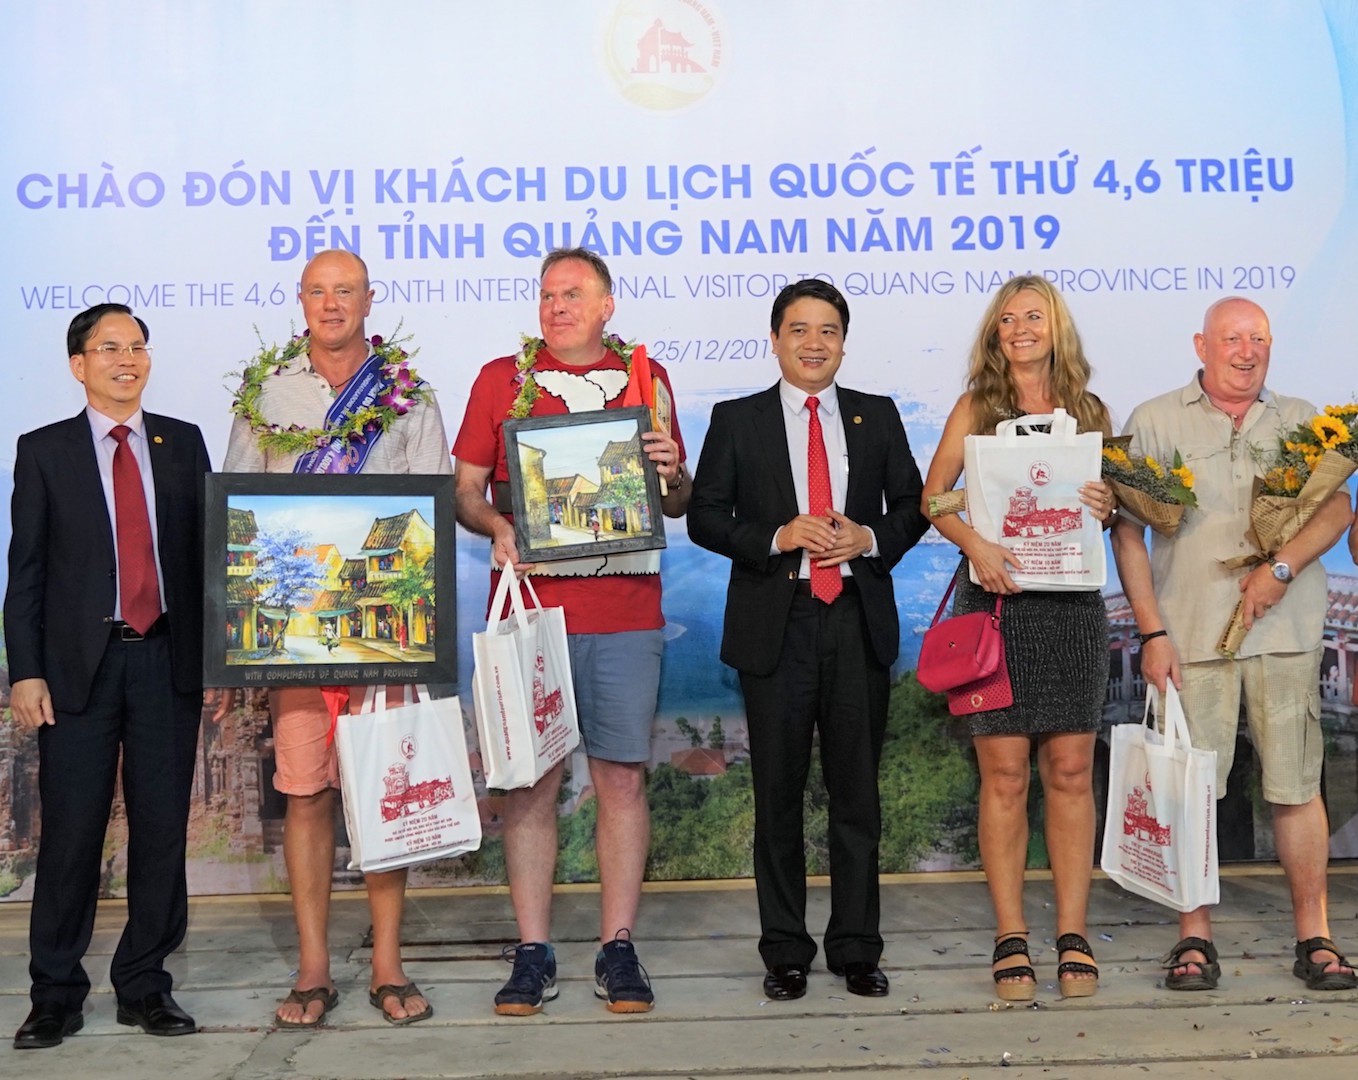 Quảng Nam đón vị khách quốc tế thứ 4,6 triệu